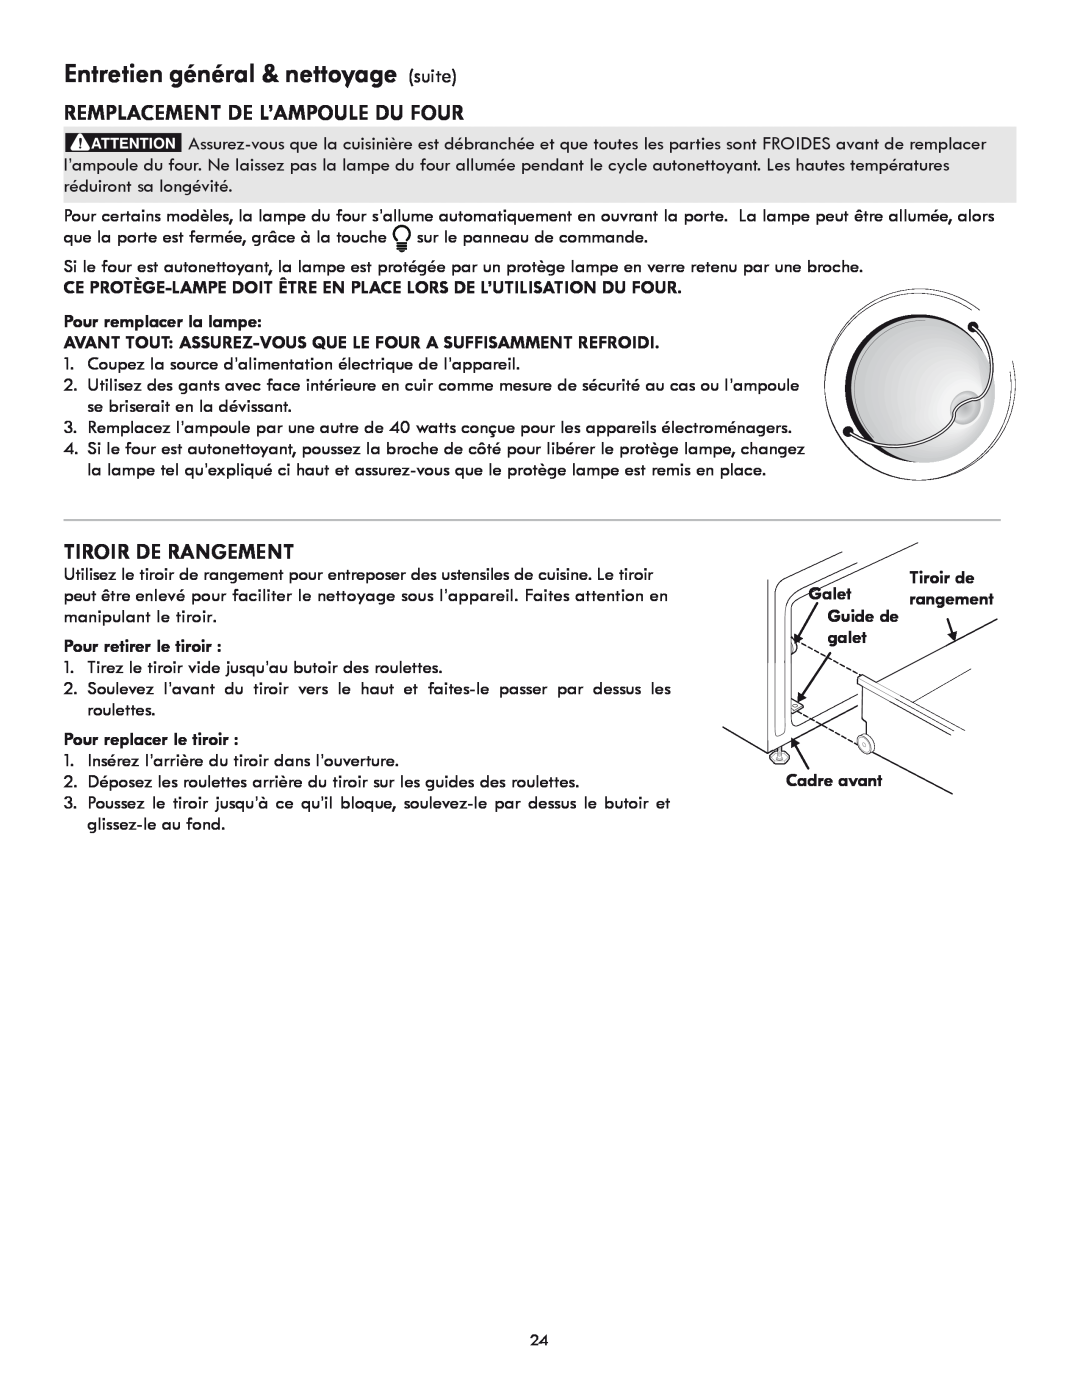 Kenmore 318205869A manual Entretien général & nettoyage suite, Remplacement de l’ampoule du four, Tiroir de rangement 